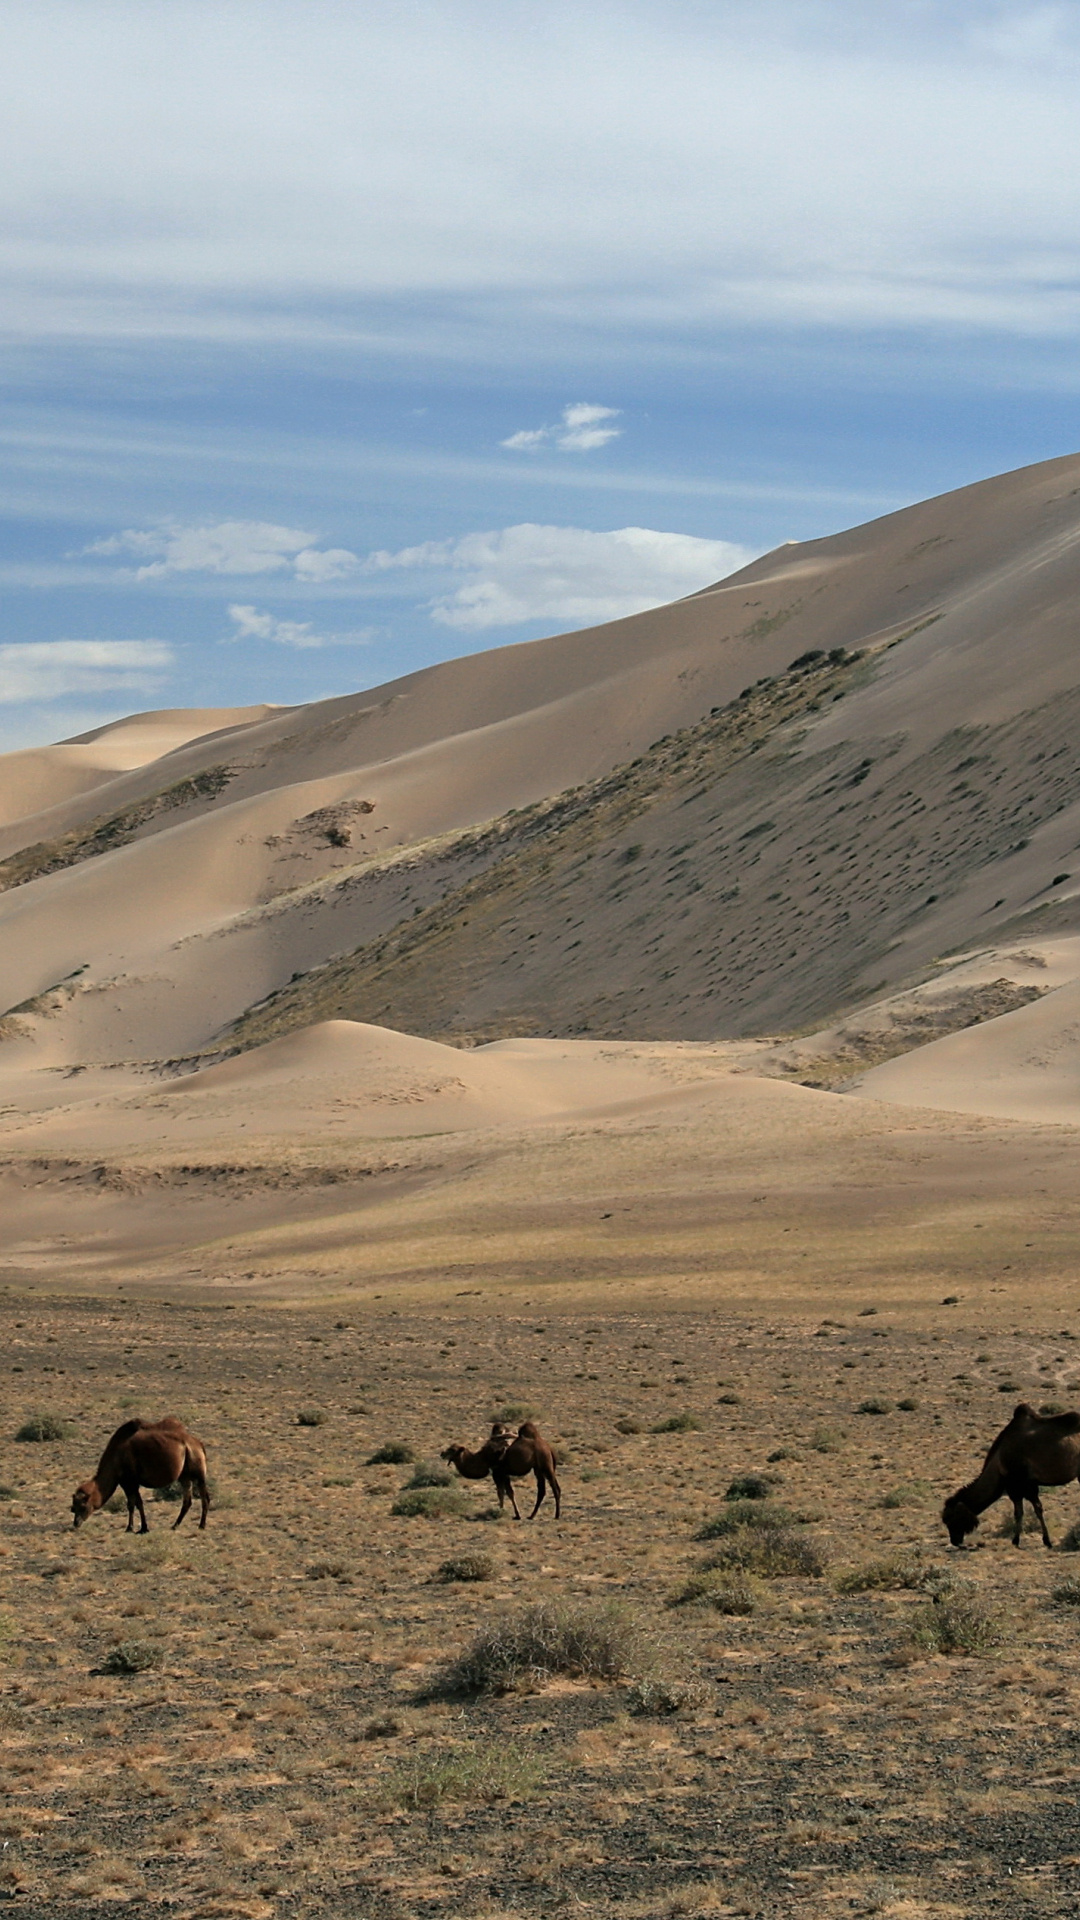 Free download Mongolia, Hongoryn Els, Desktop mobile tablet, Beautiful desert landscape, 1080x1920 Full HD Phone